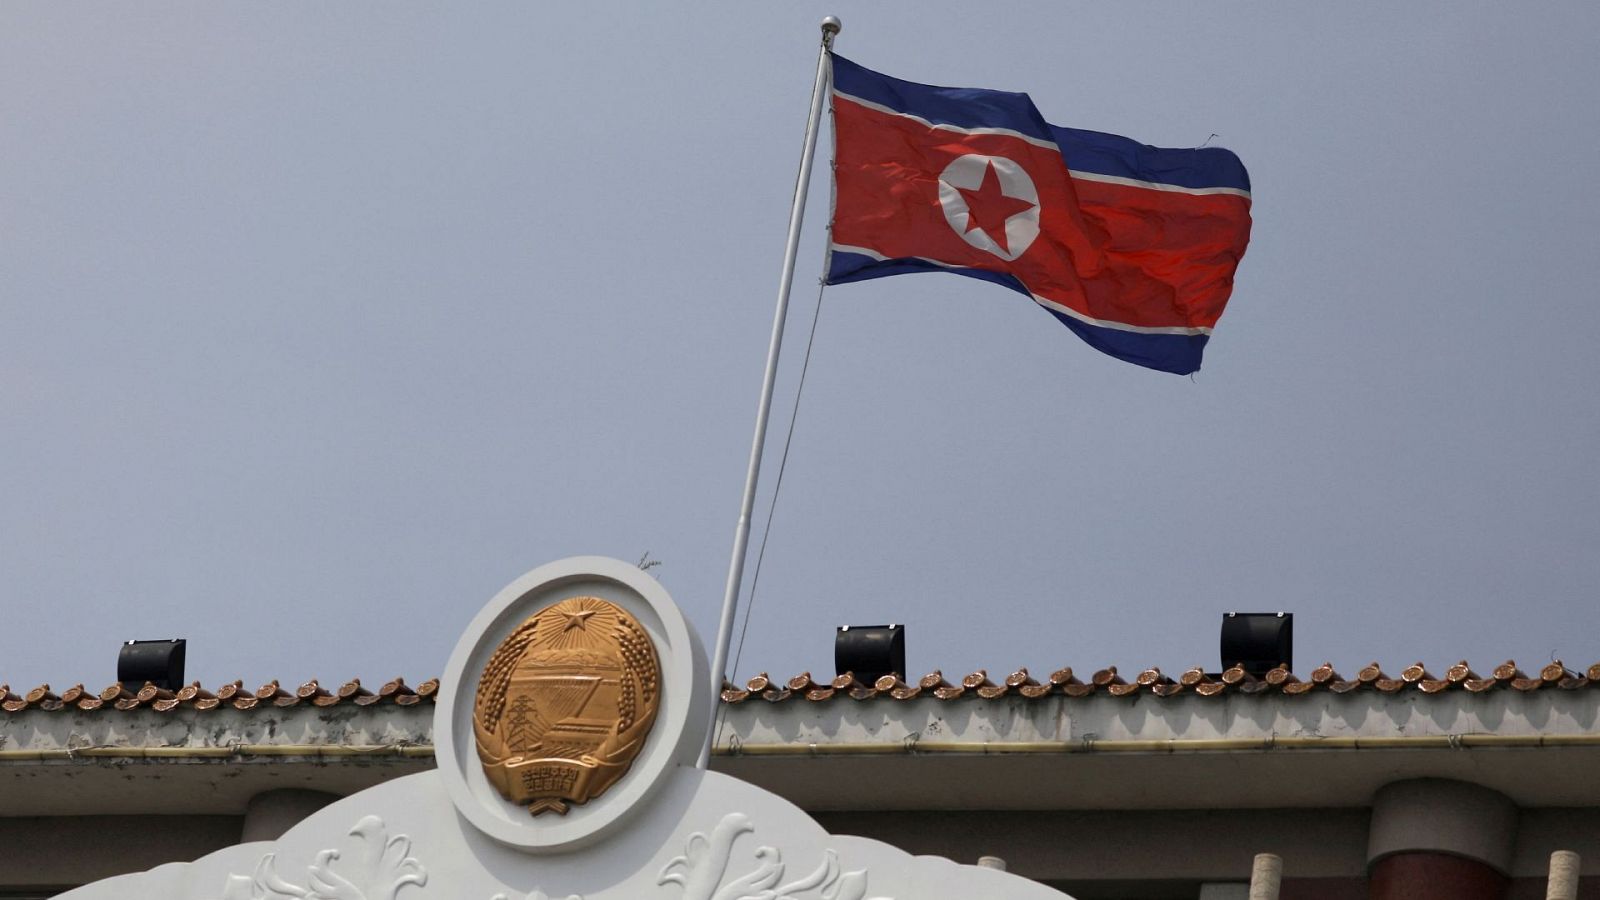 La bandera norcoreana ondea en la oficina consular de Corea del Norte.